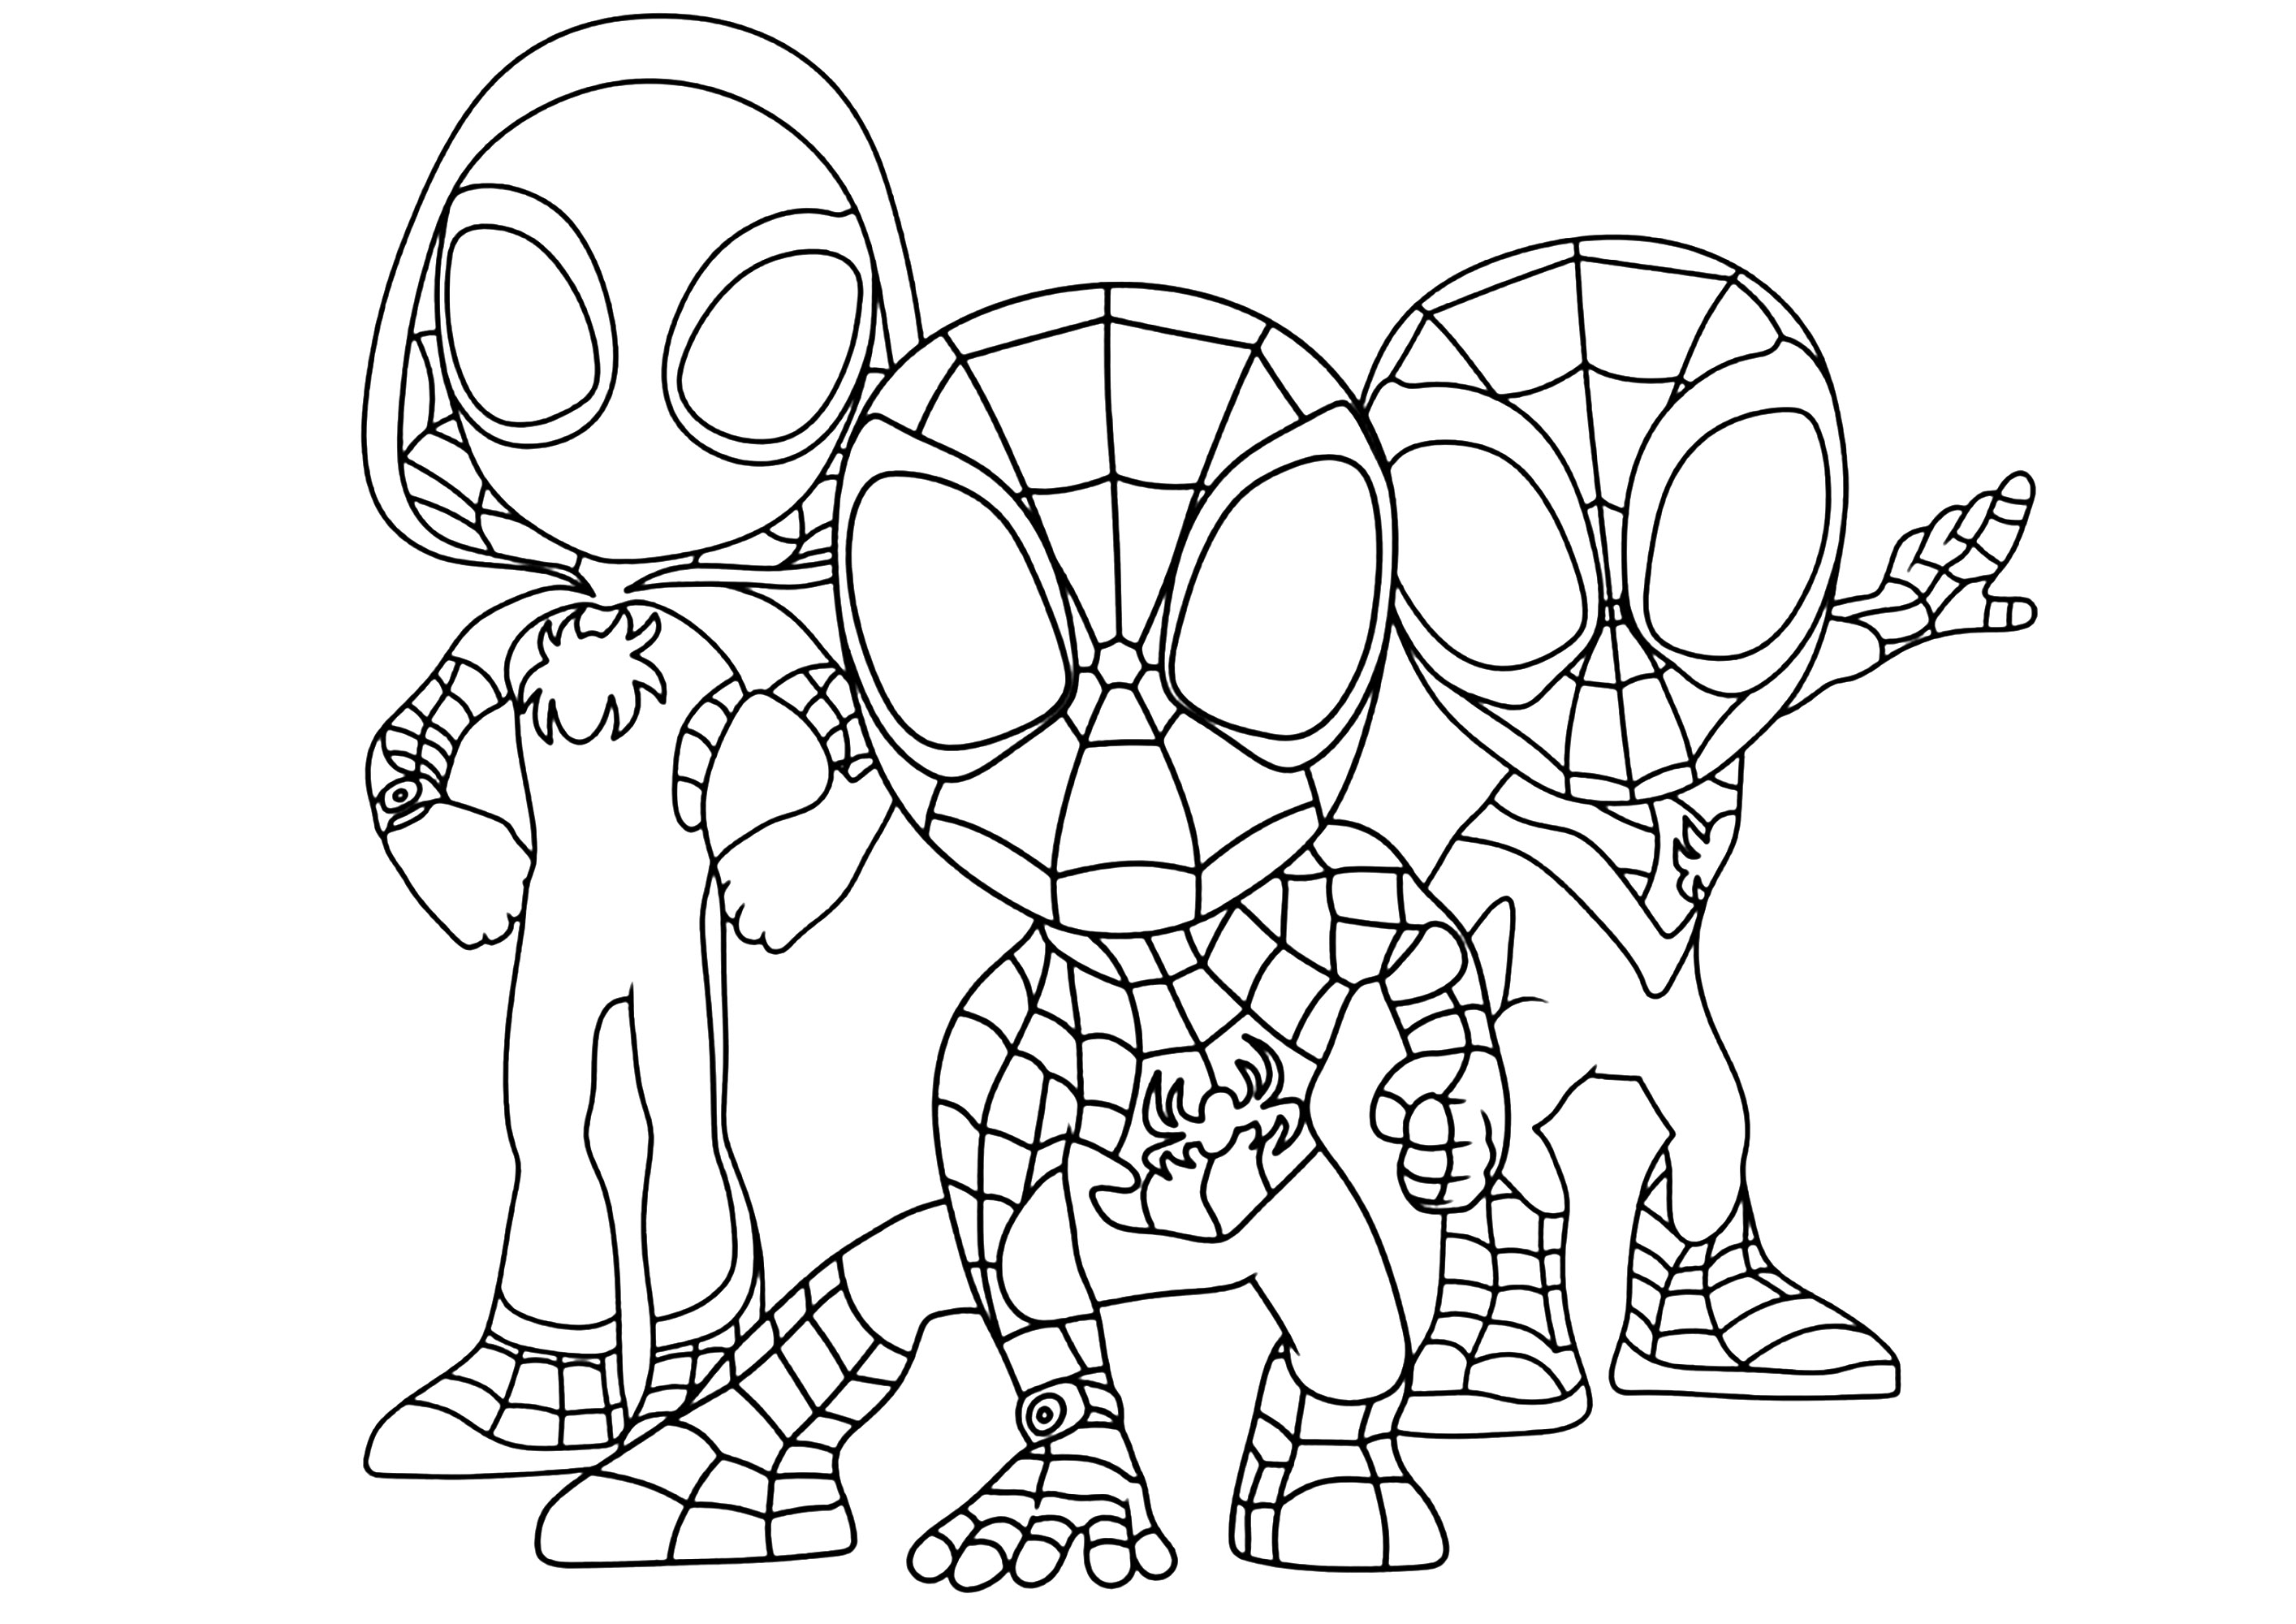 Personagens da 'Nova Geração' em modo Kawaii. Spider-Gwen e as duas versões do Homem-Aranha (Mike Morales e Peter Parker)